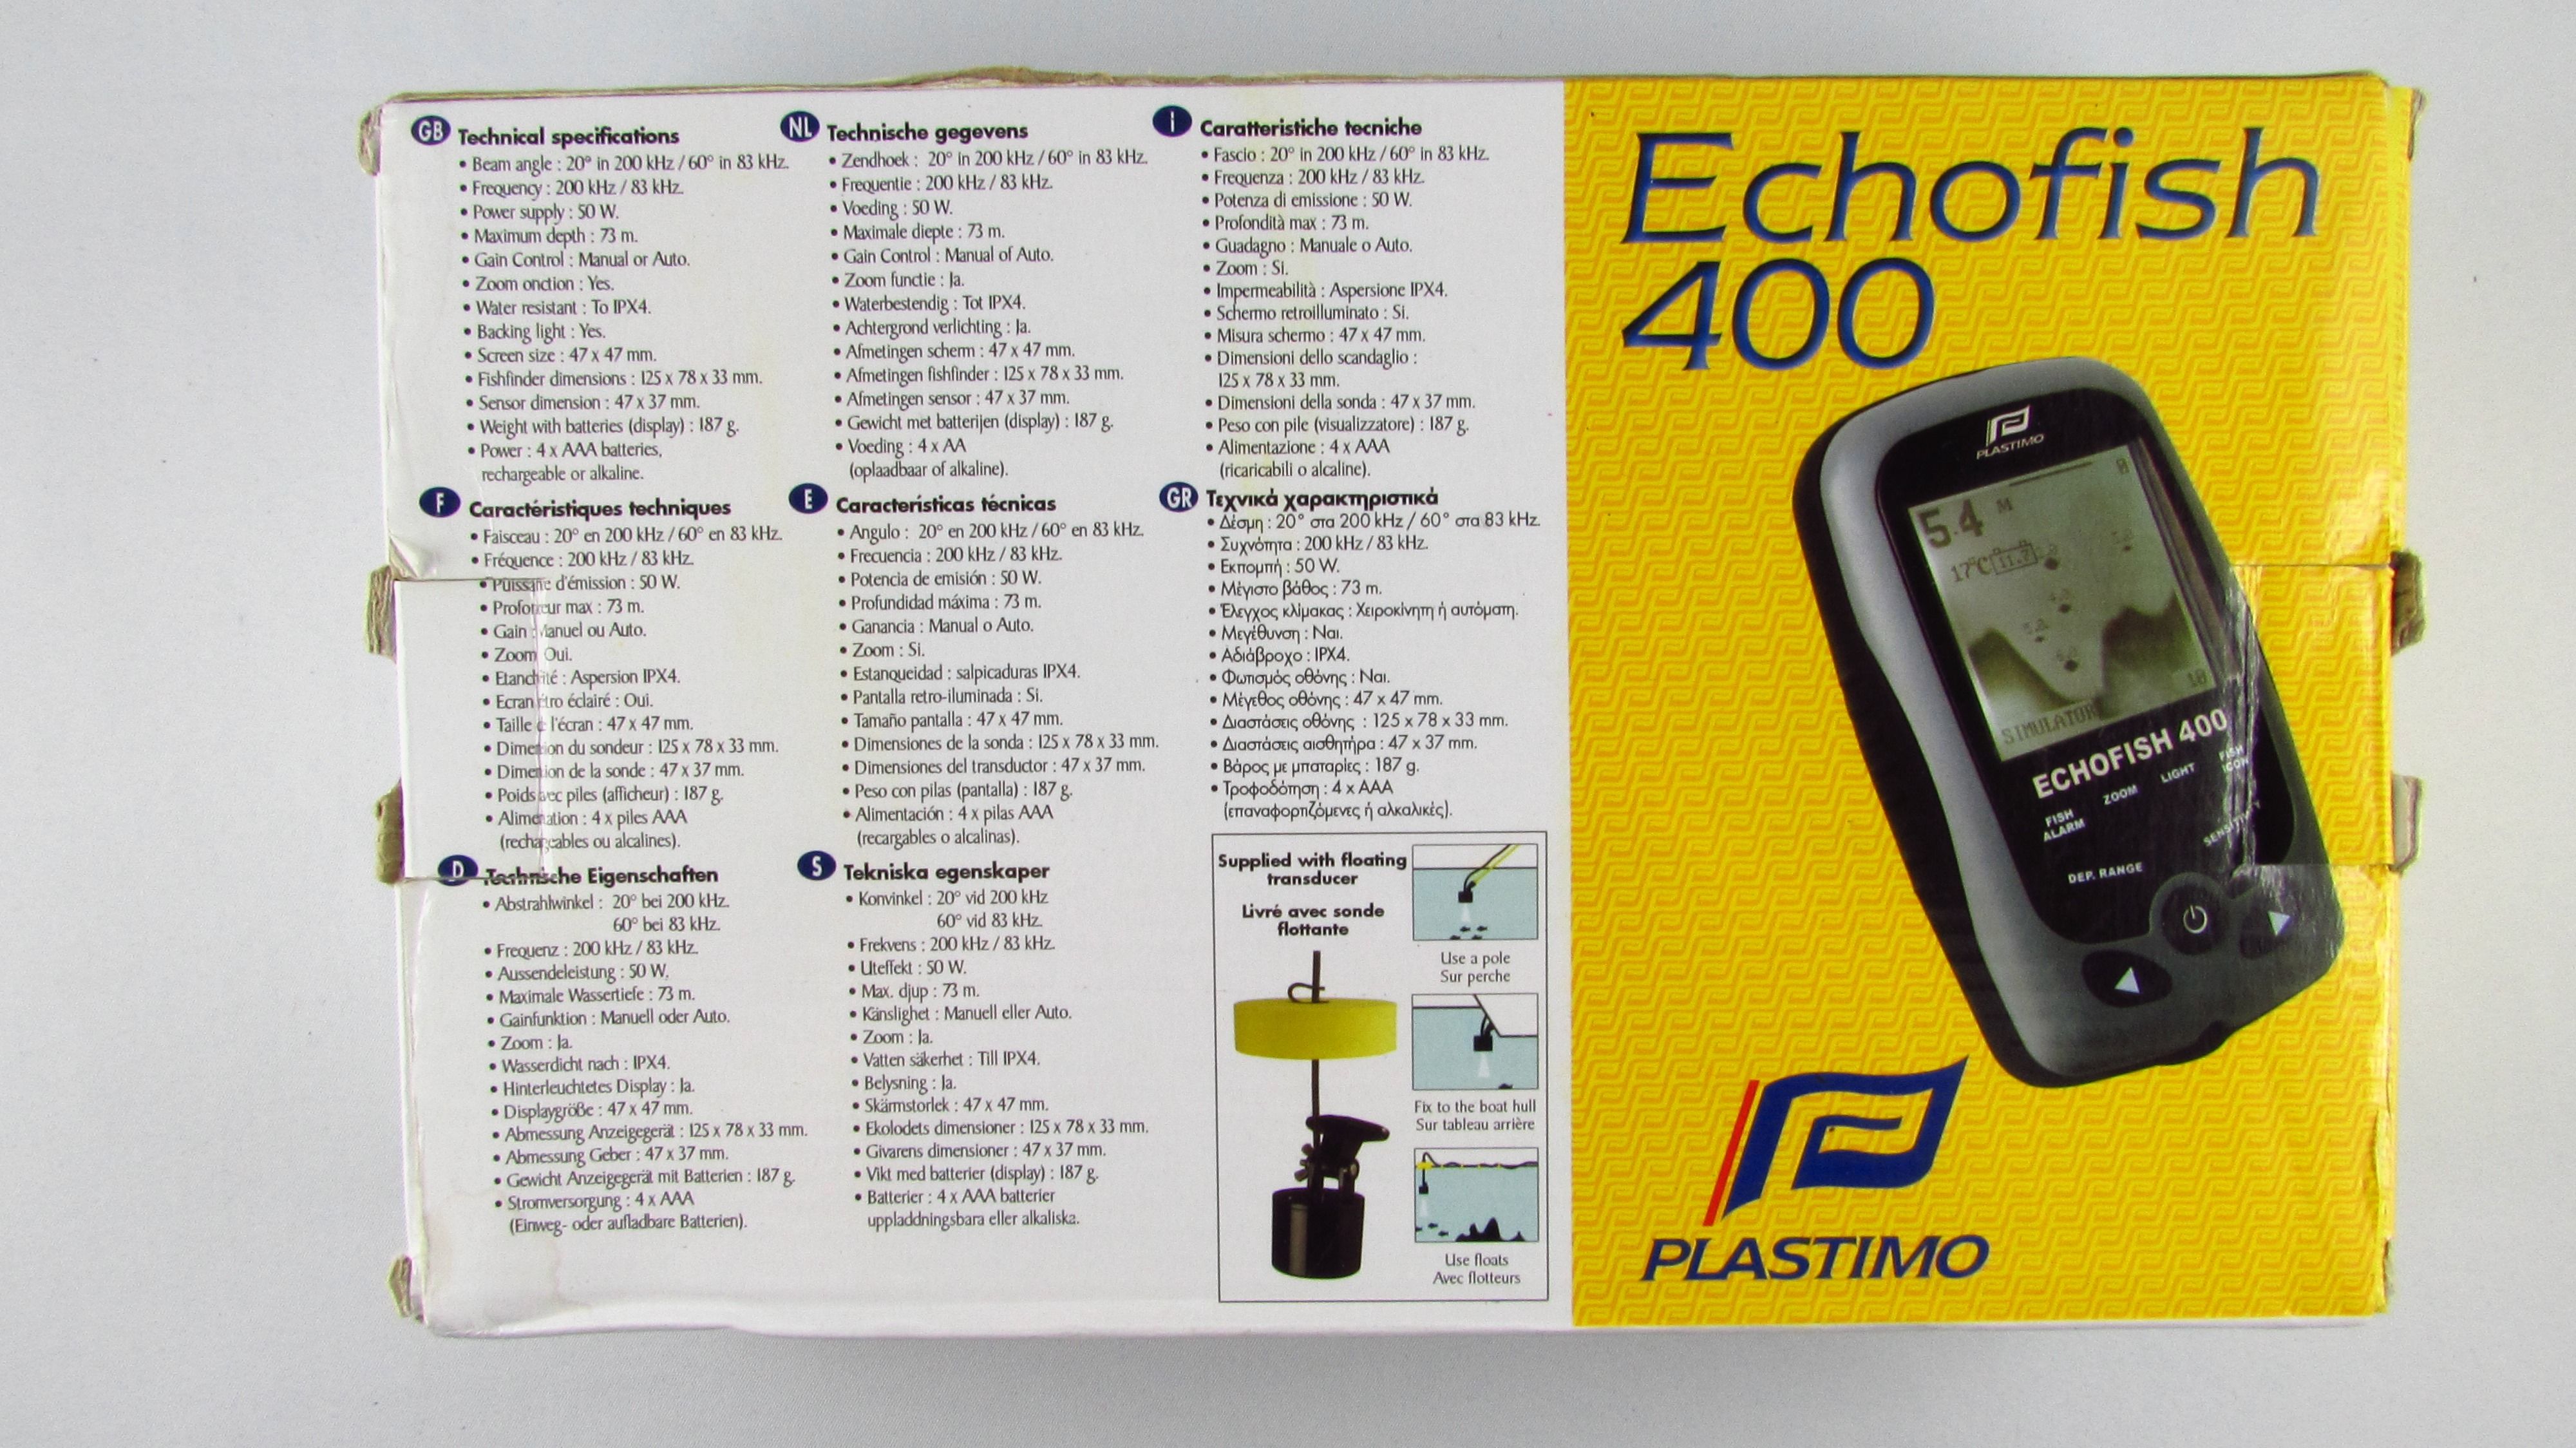 PLASTIMO - Echofish 400 Echosonda do połowu ryb